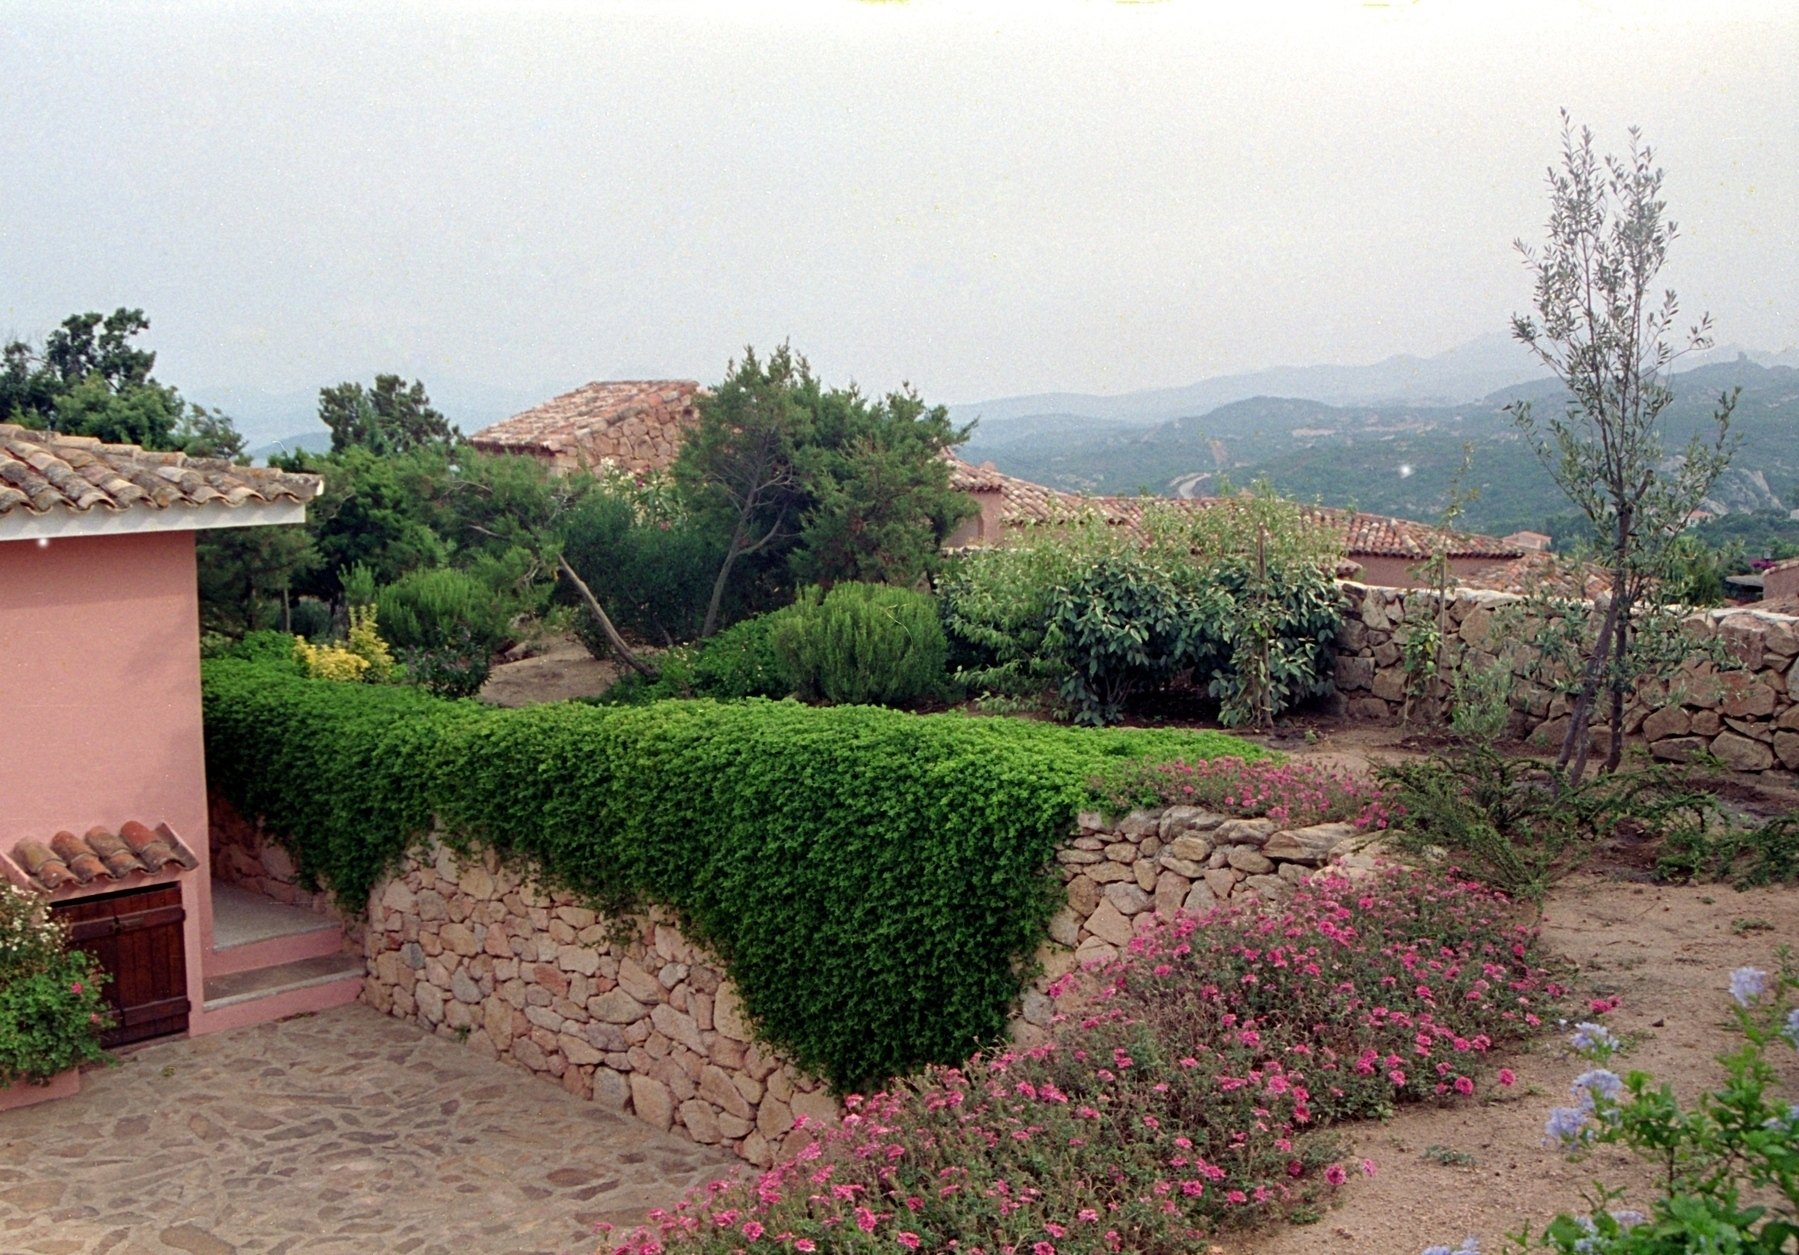 A villa garden in Sardinia